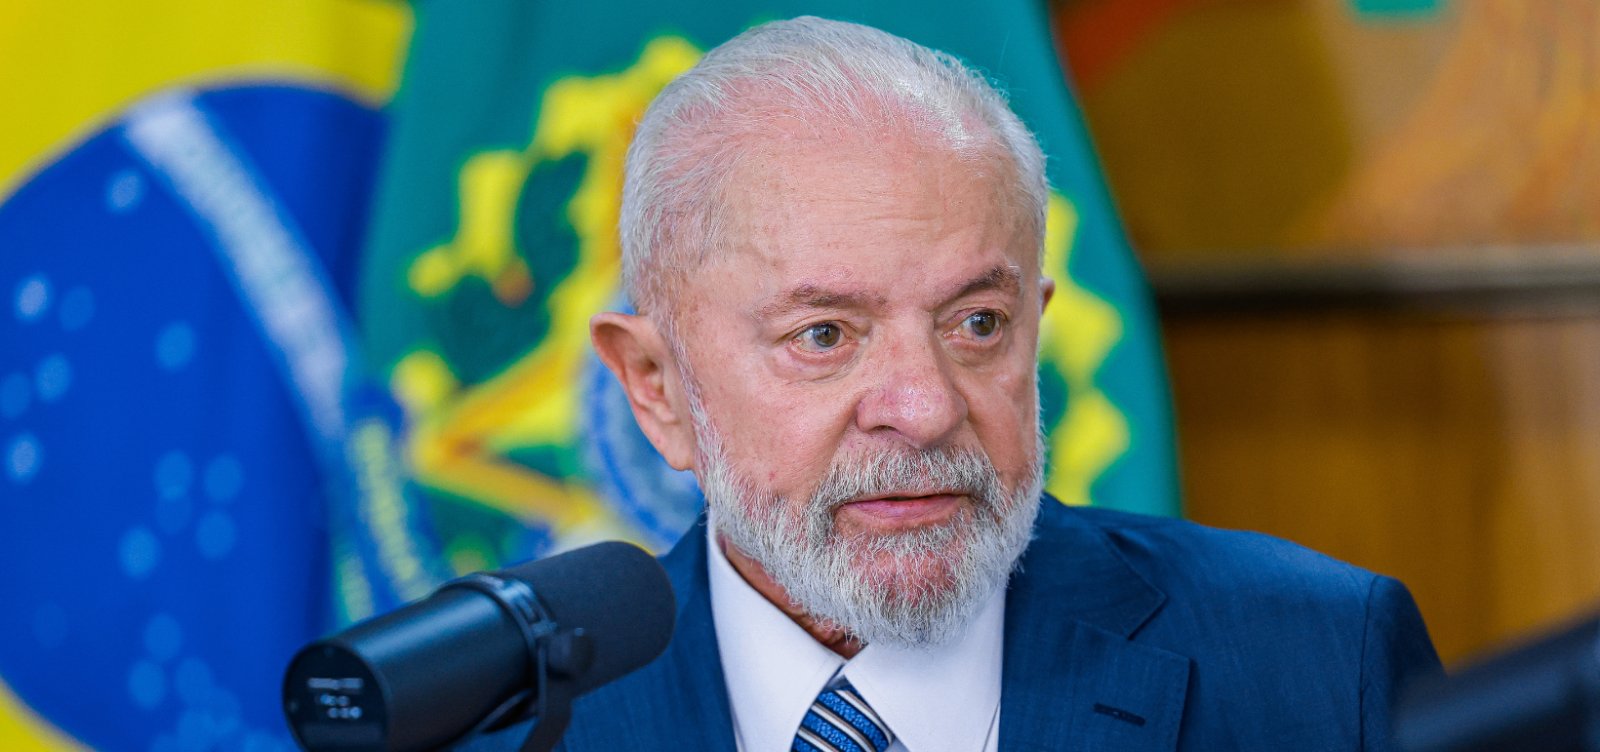 Após decisão do STF sobre porte de maconha, Lula diz que "Supremo não tem que se meter em tudo"